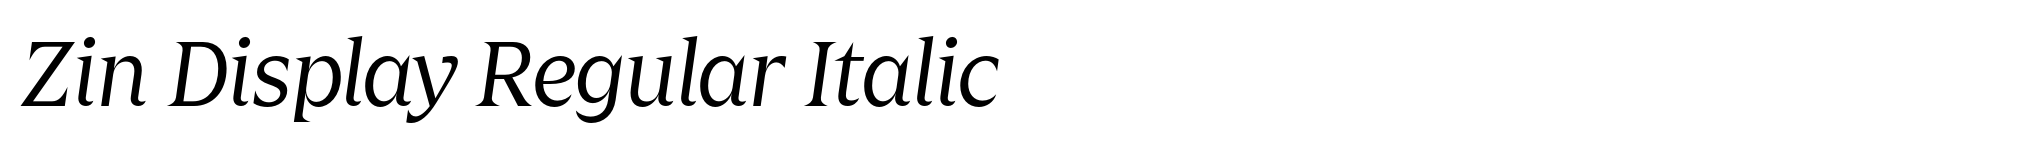 Zin Display Regular Italic image